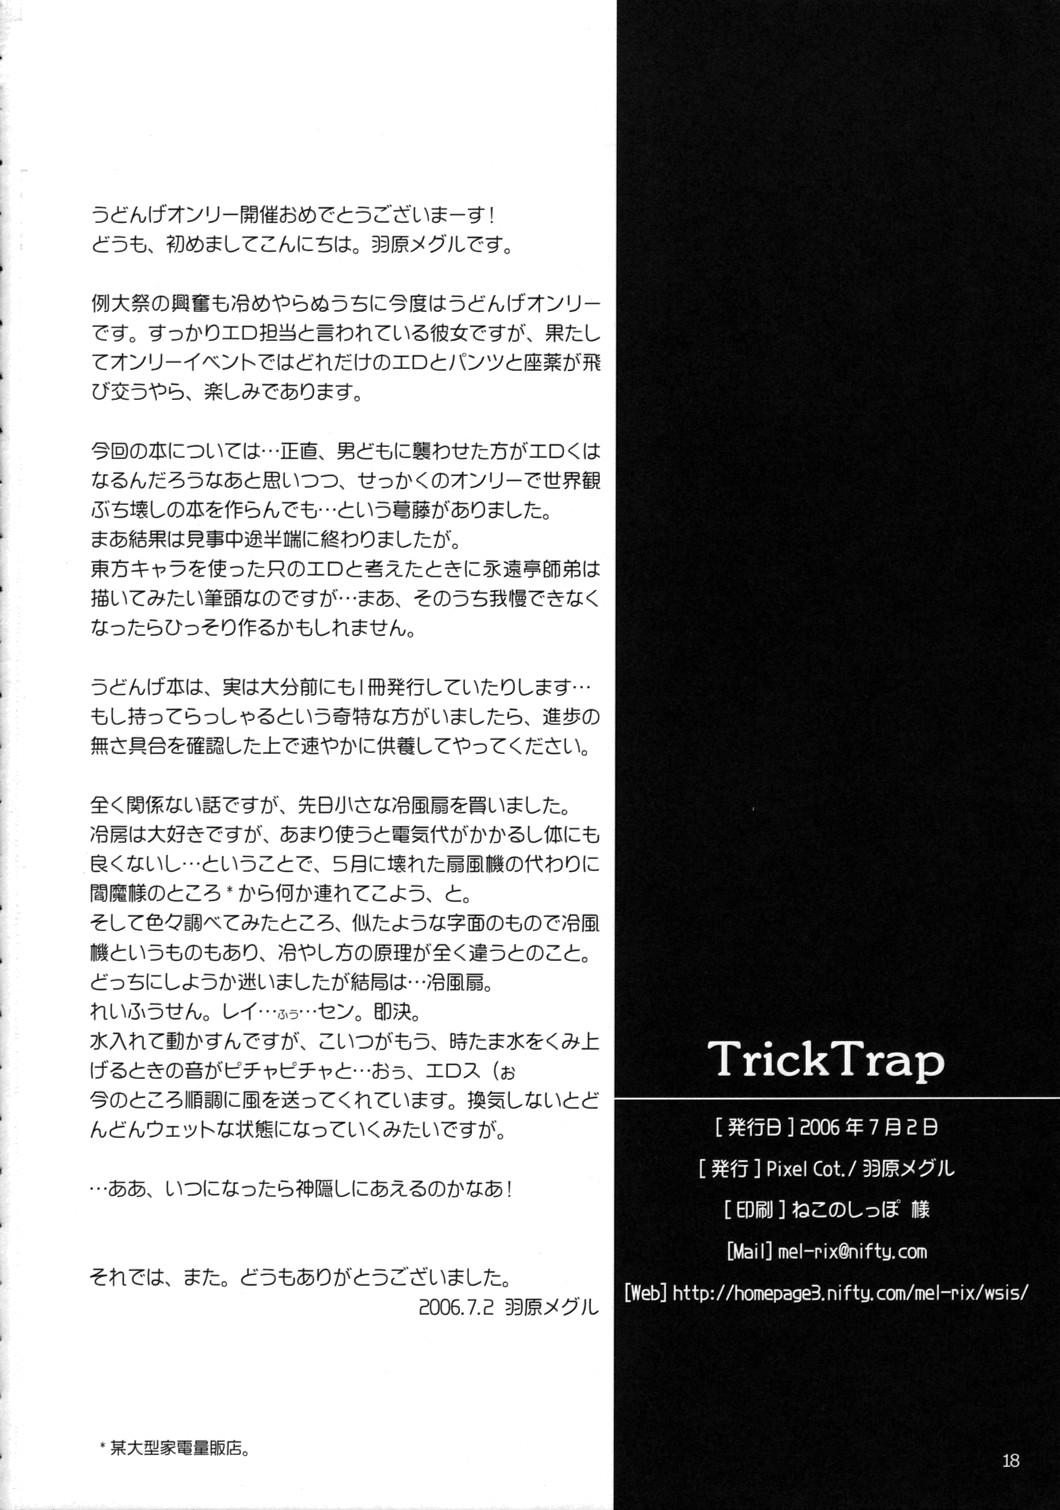 TRICK TRAP 16